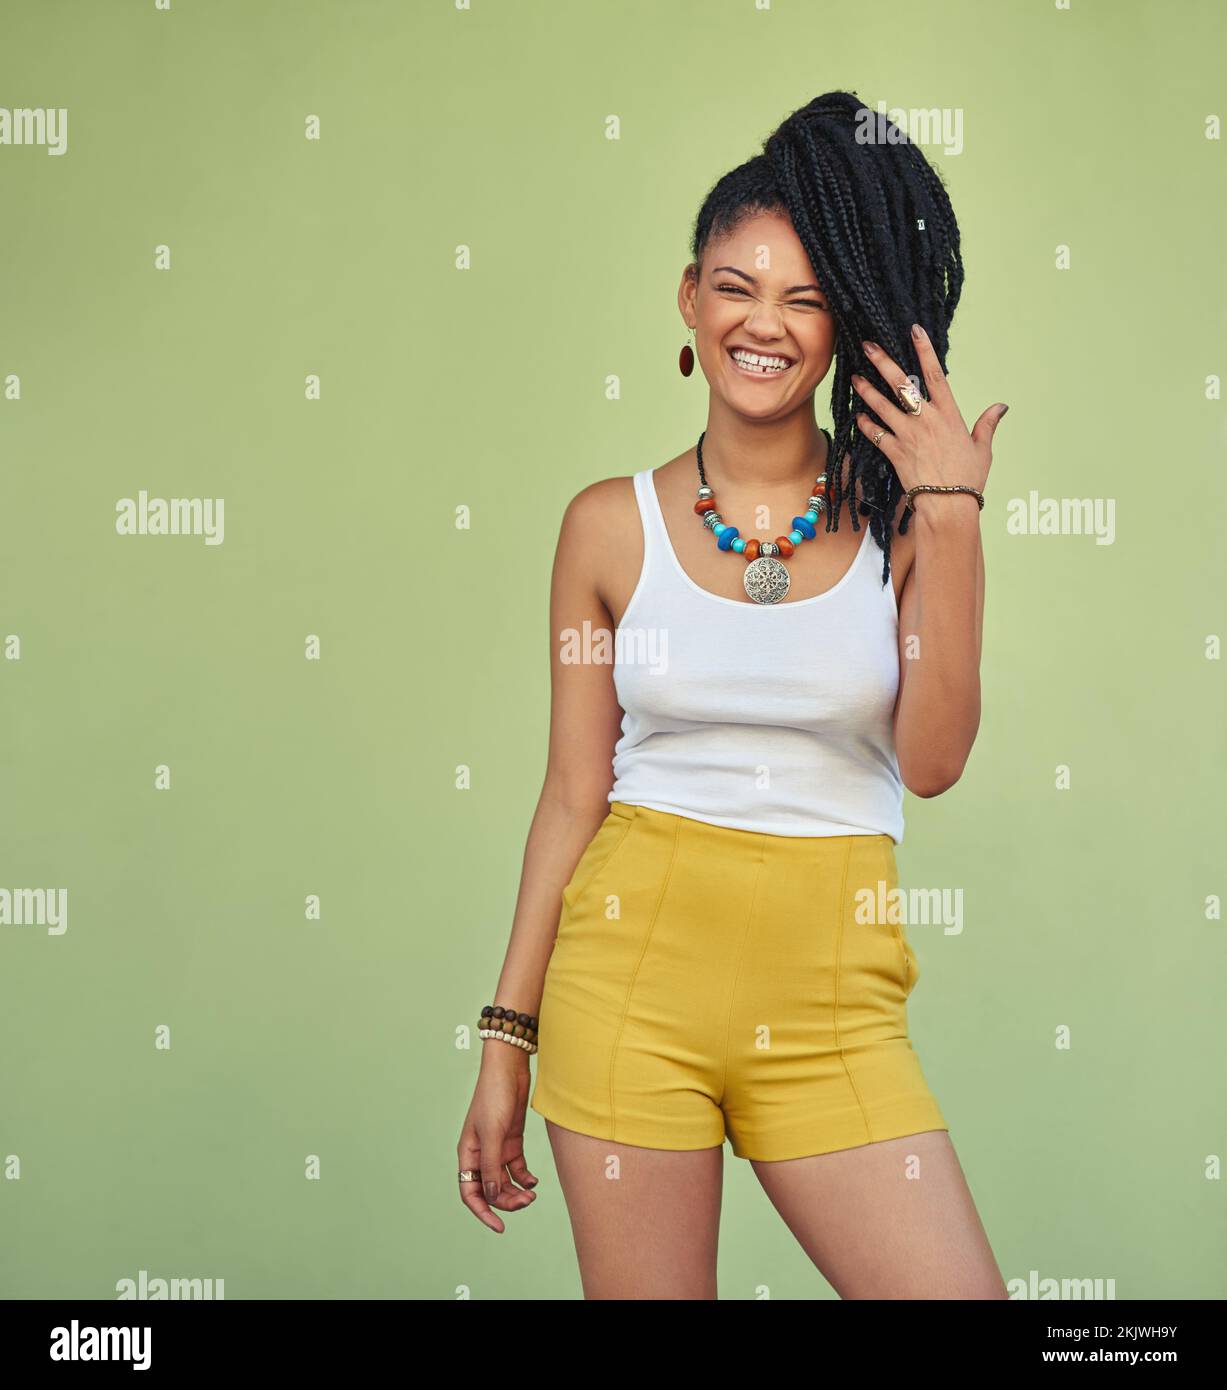 Mode, Porträt und natürliche schwarze Frau mit Zöpfen, die Jugend, Urlaub und Sommerfreiheit genießen. Fröhlich, Wellness und aufregendes Lächeln des jungen Jamaikaners Stockfoto